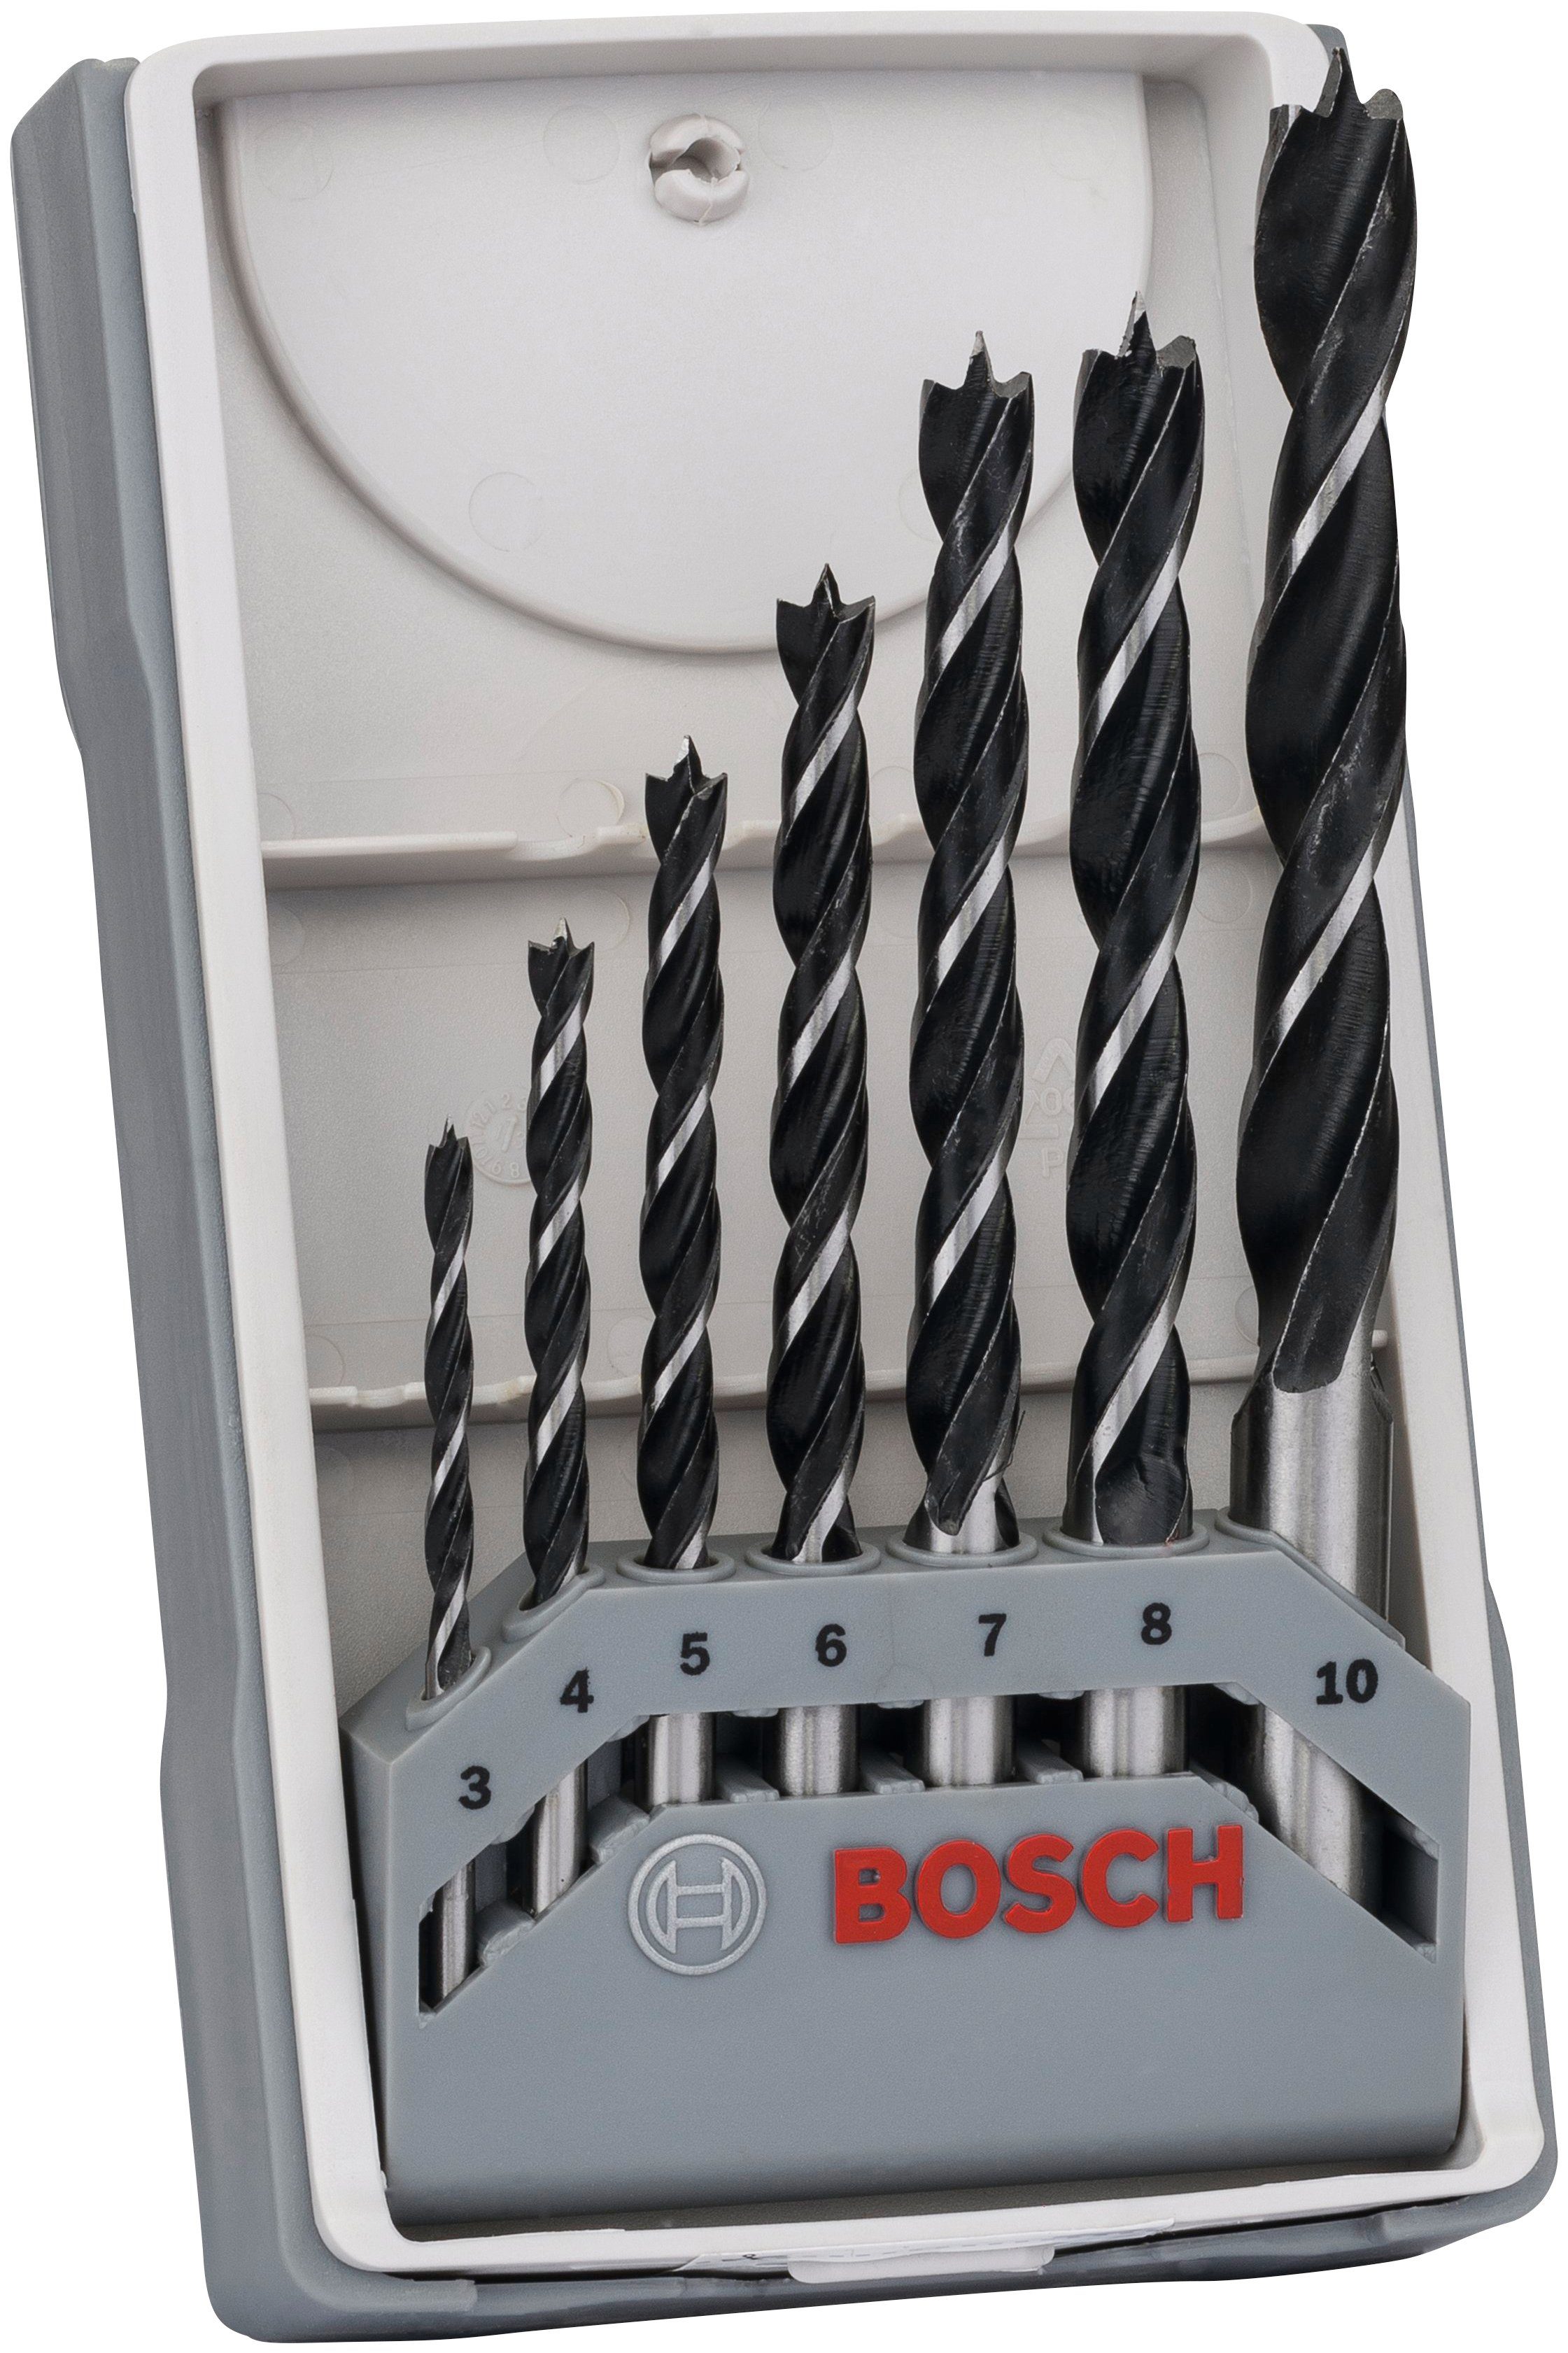 Holzbohrer-Set Line, Professional 7-tlg), X-Pro Holzbohrer 3,4,5,6,7,8,10 Bosch (Set,